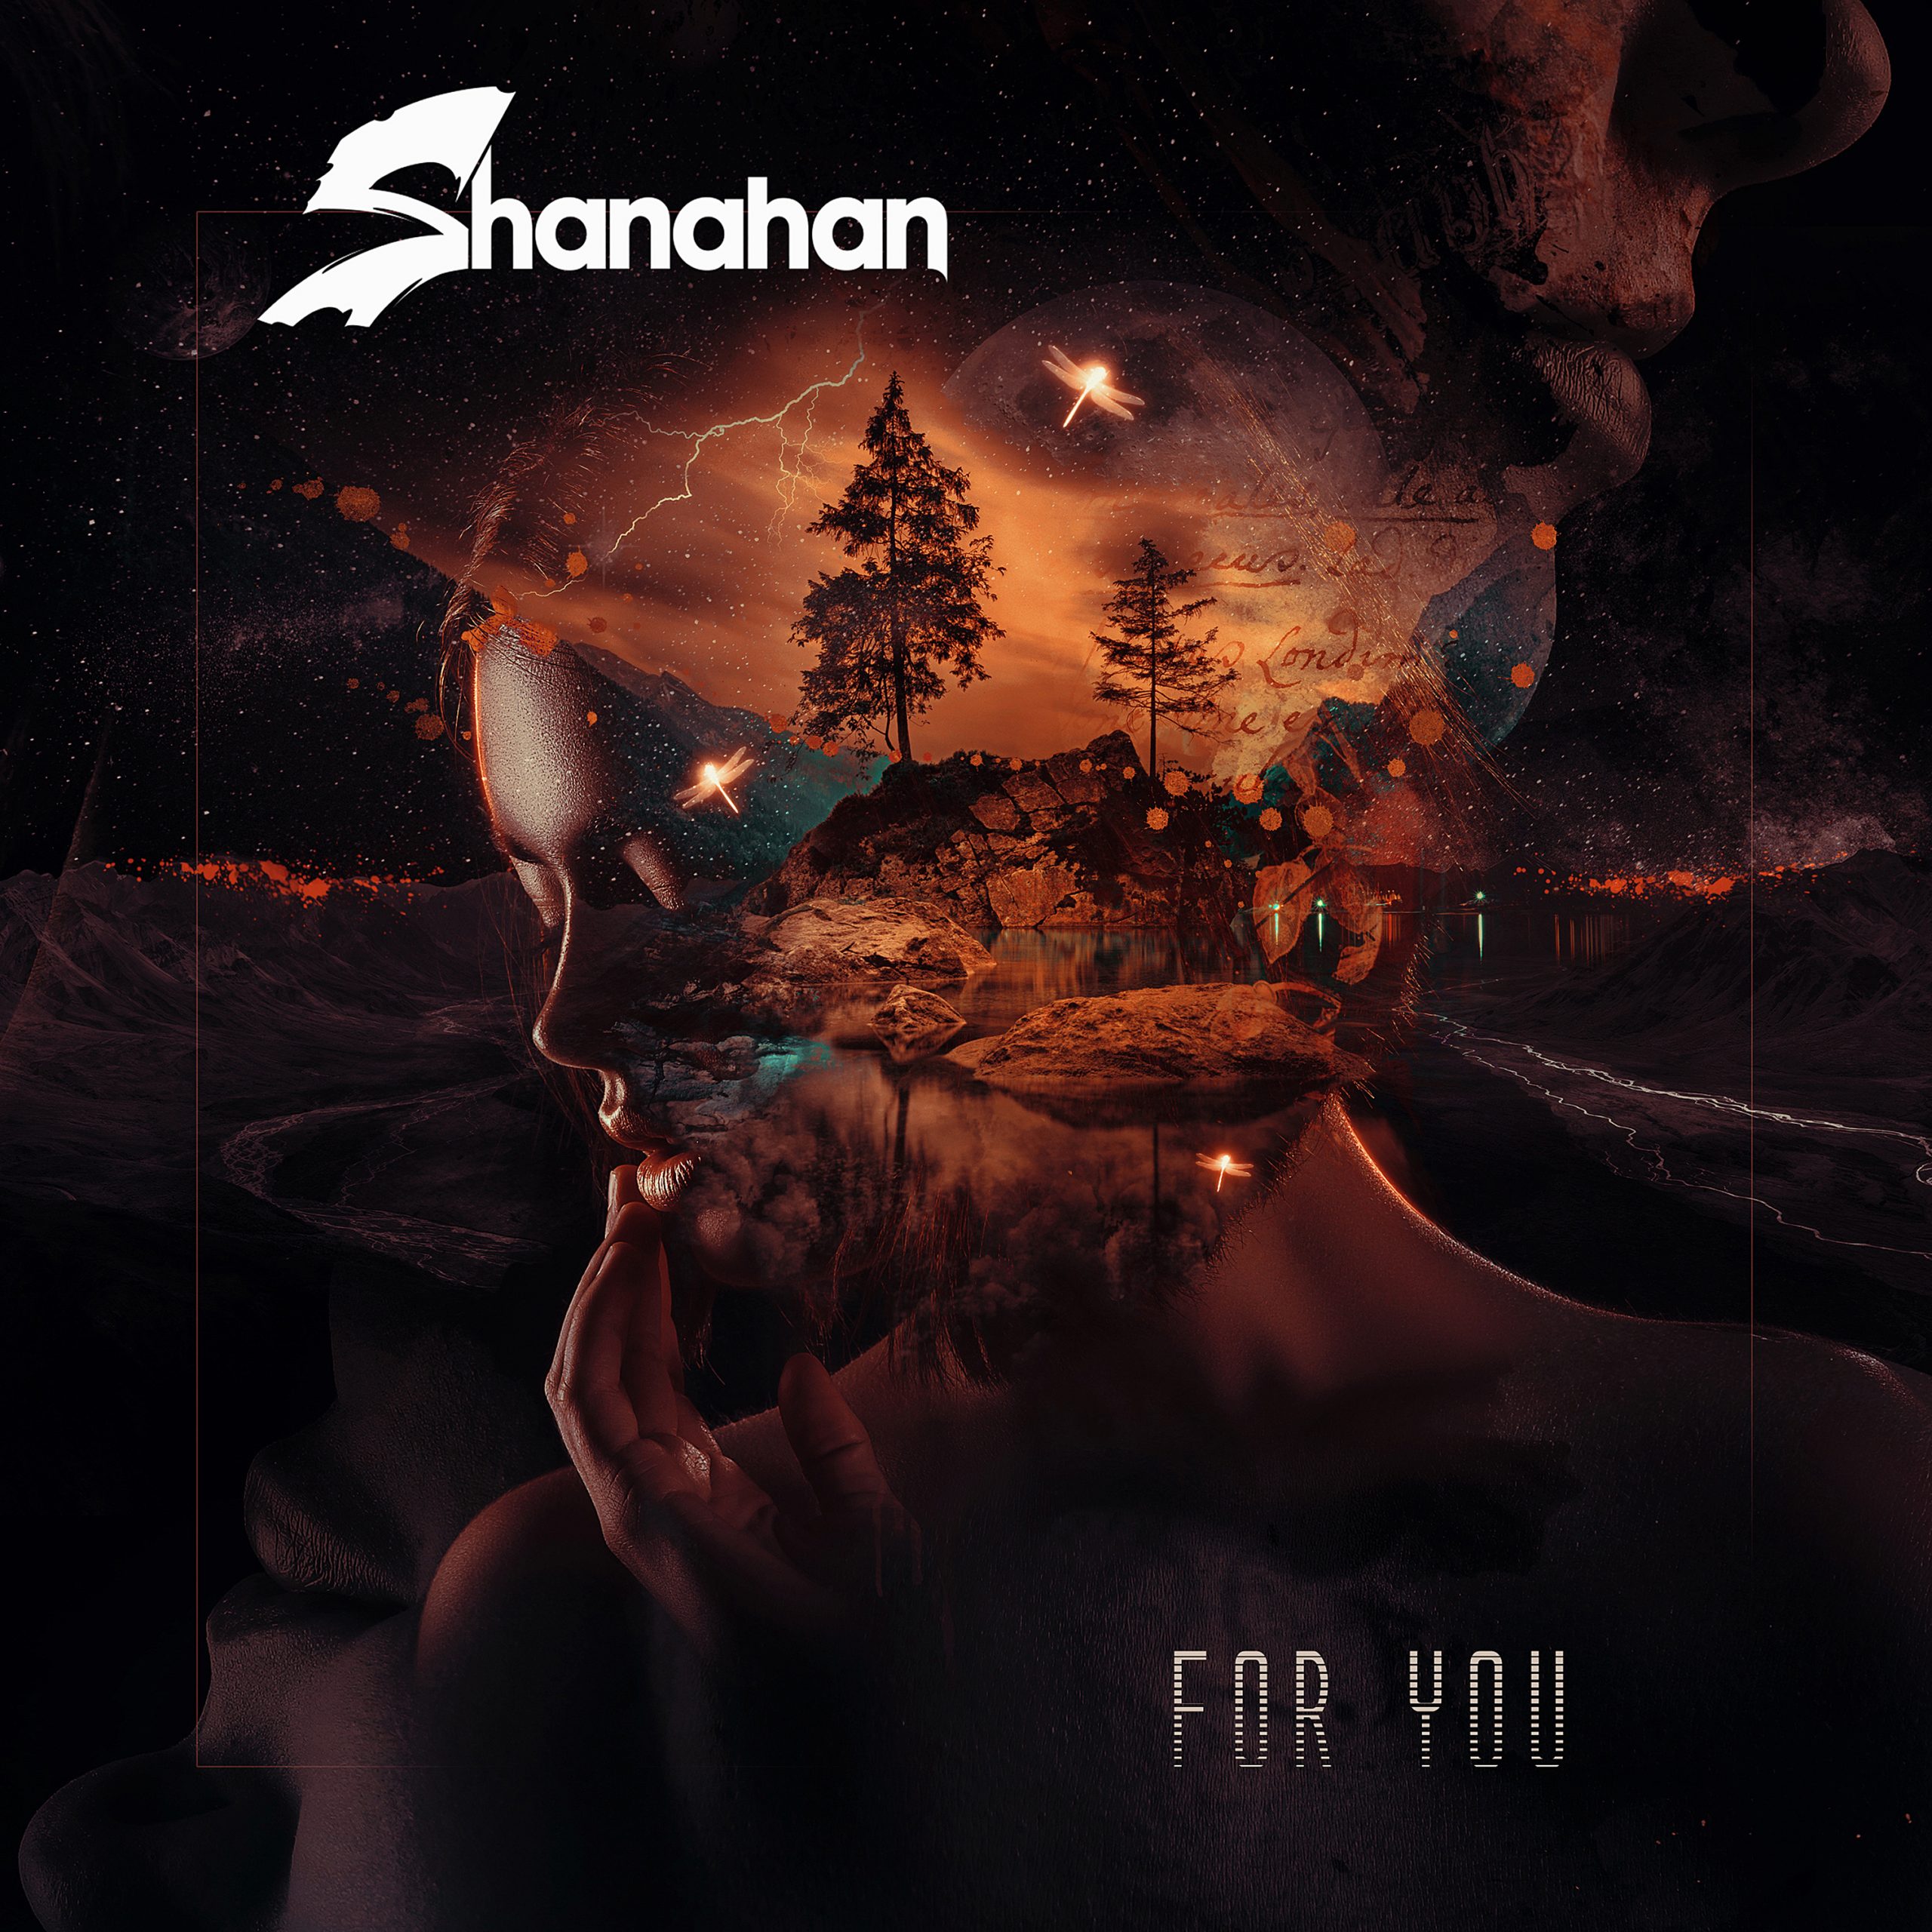 Shanahan For You EP album artwork design